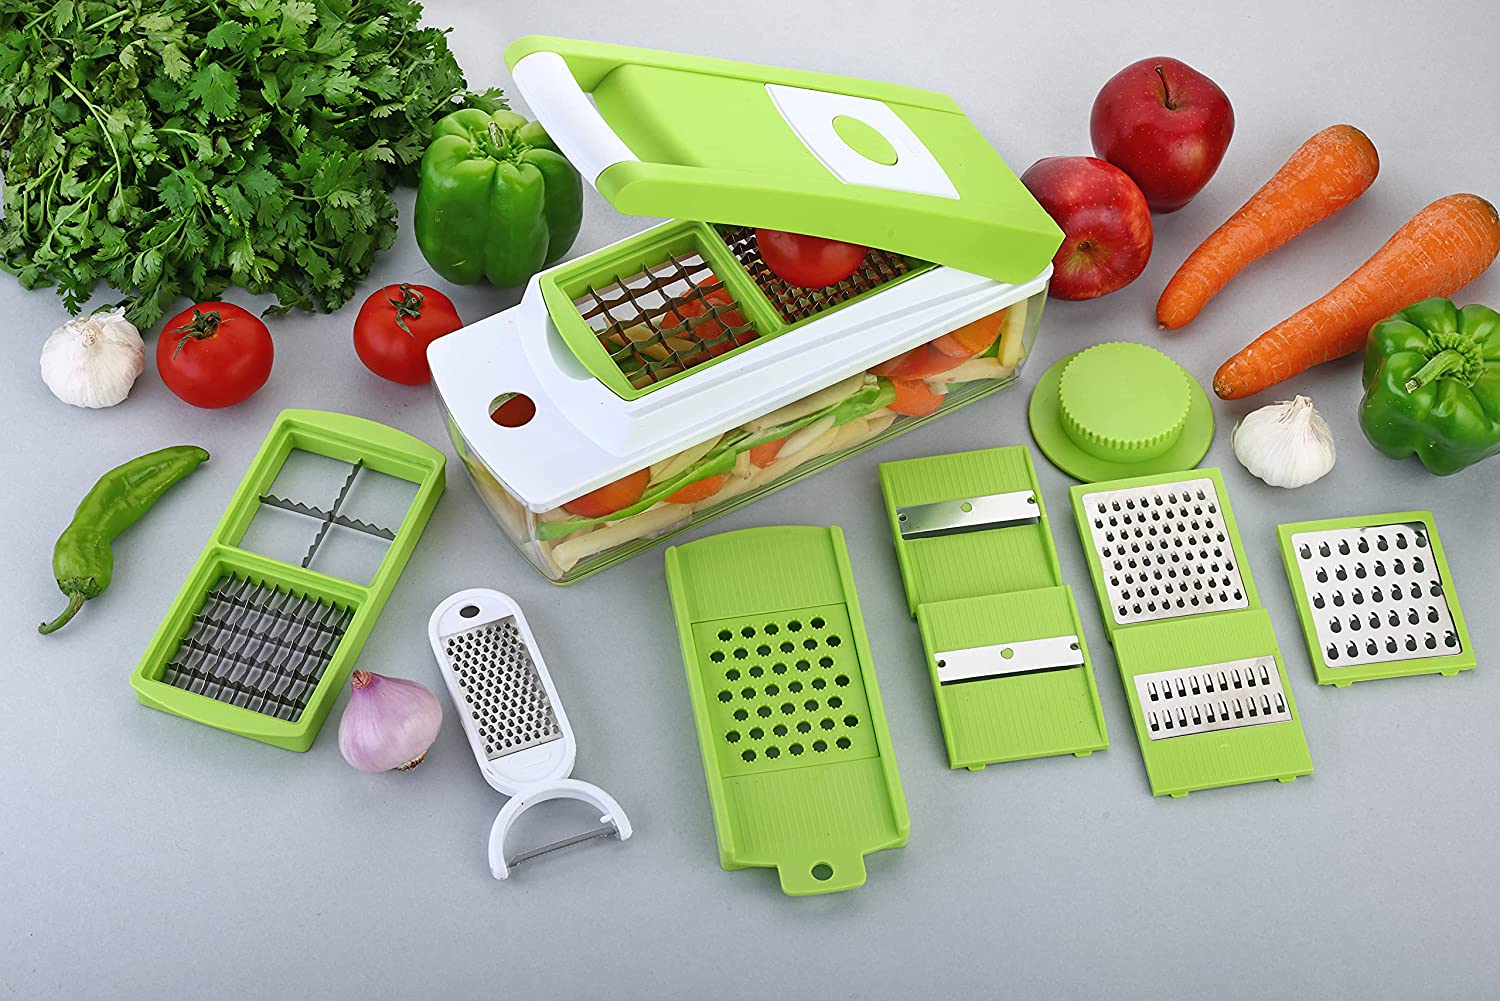 Plastic Multipurpose Vegetable and Fruit Chopper Cutter Grater Slicer, Green4